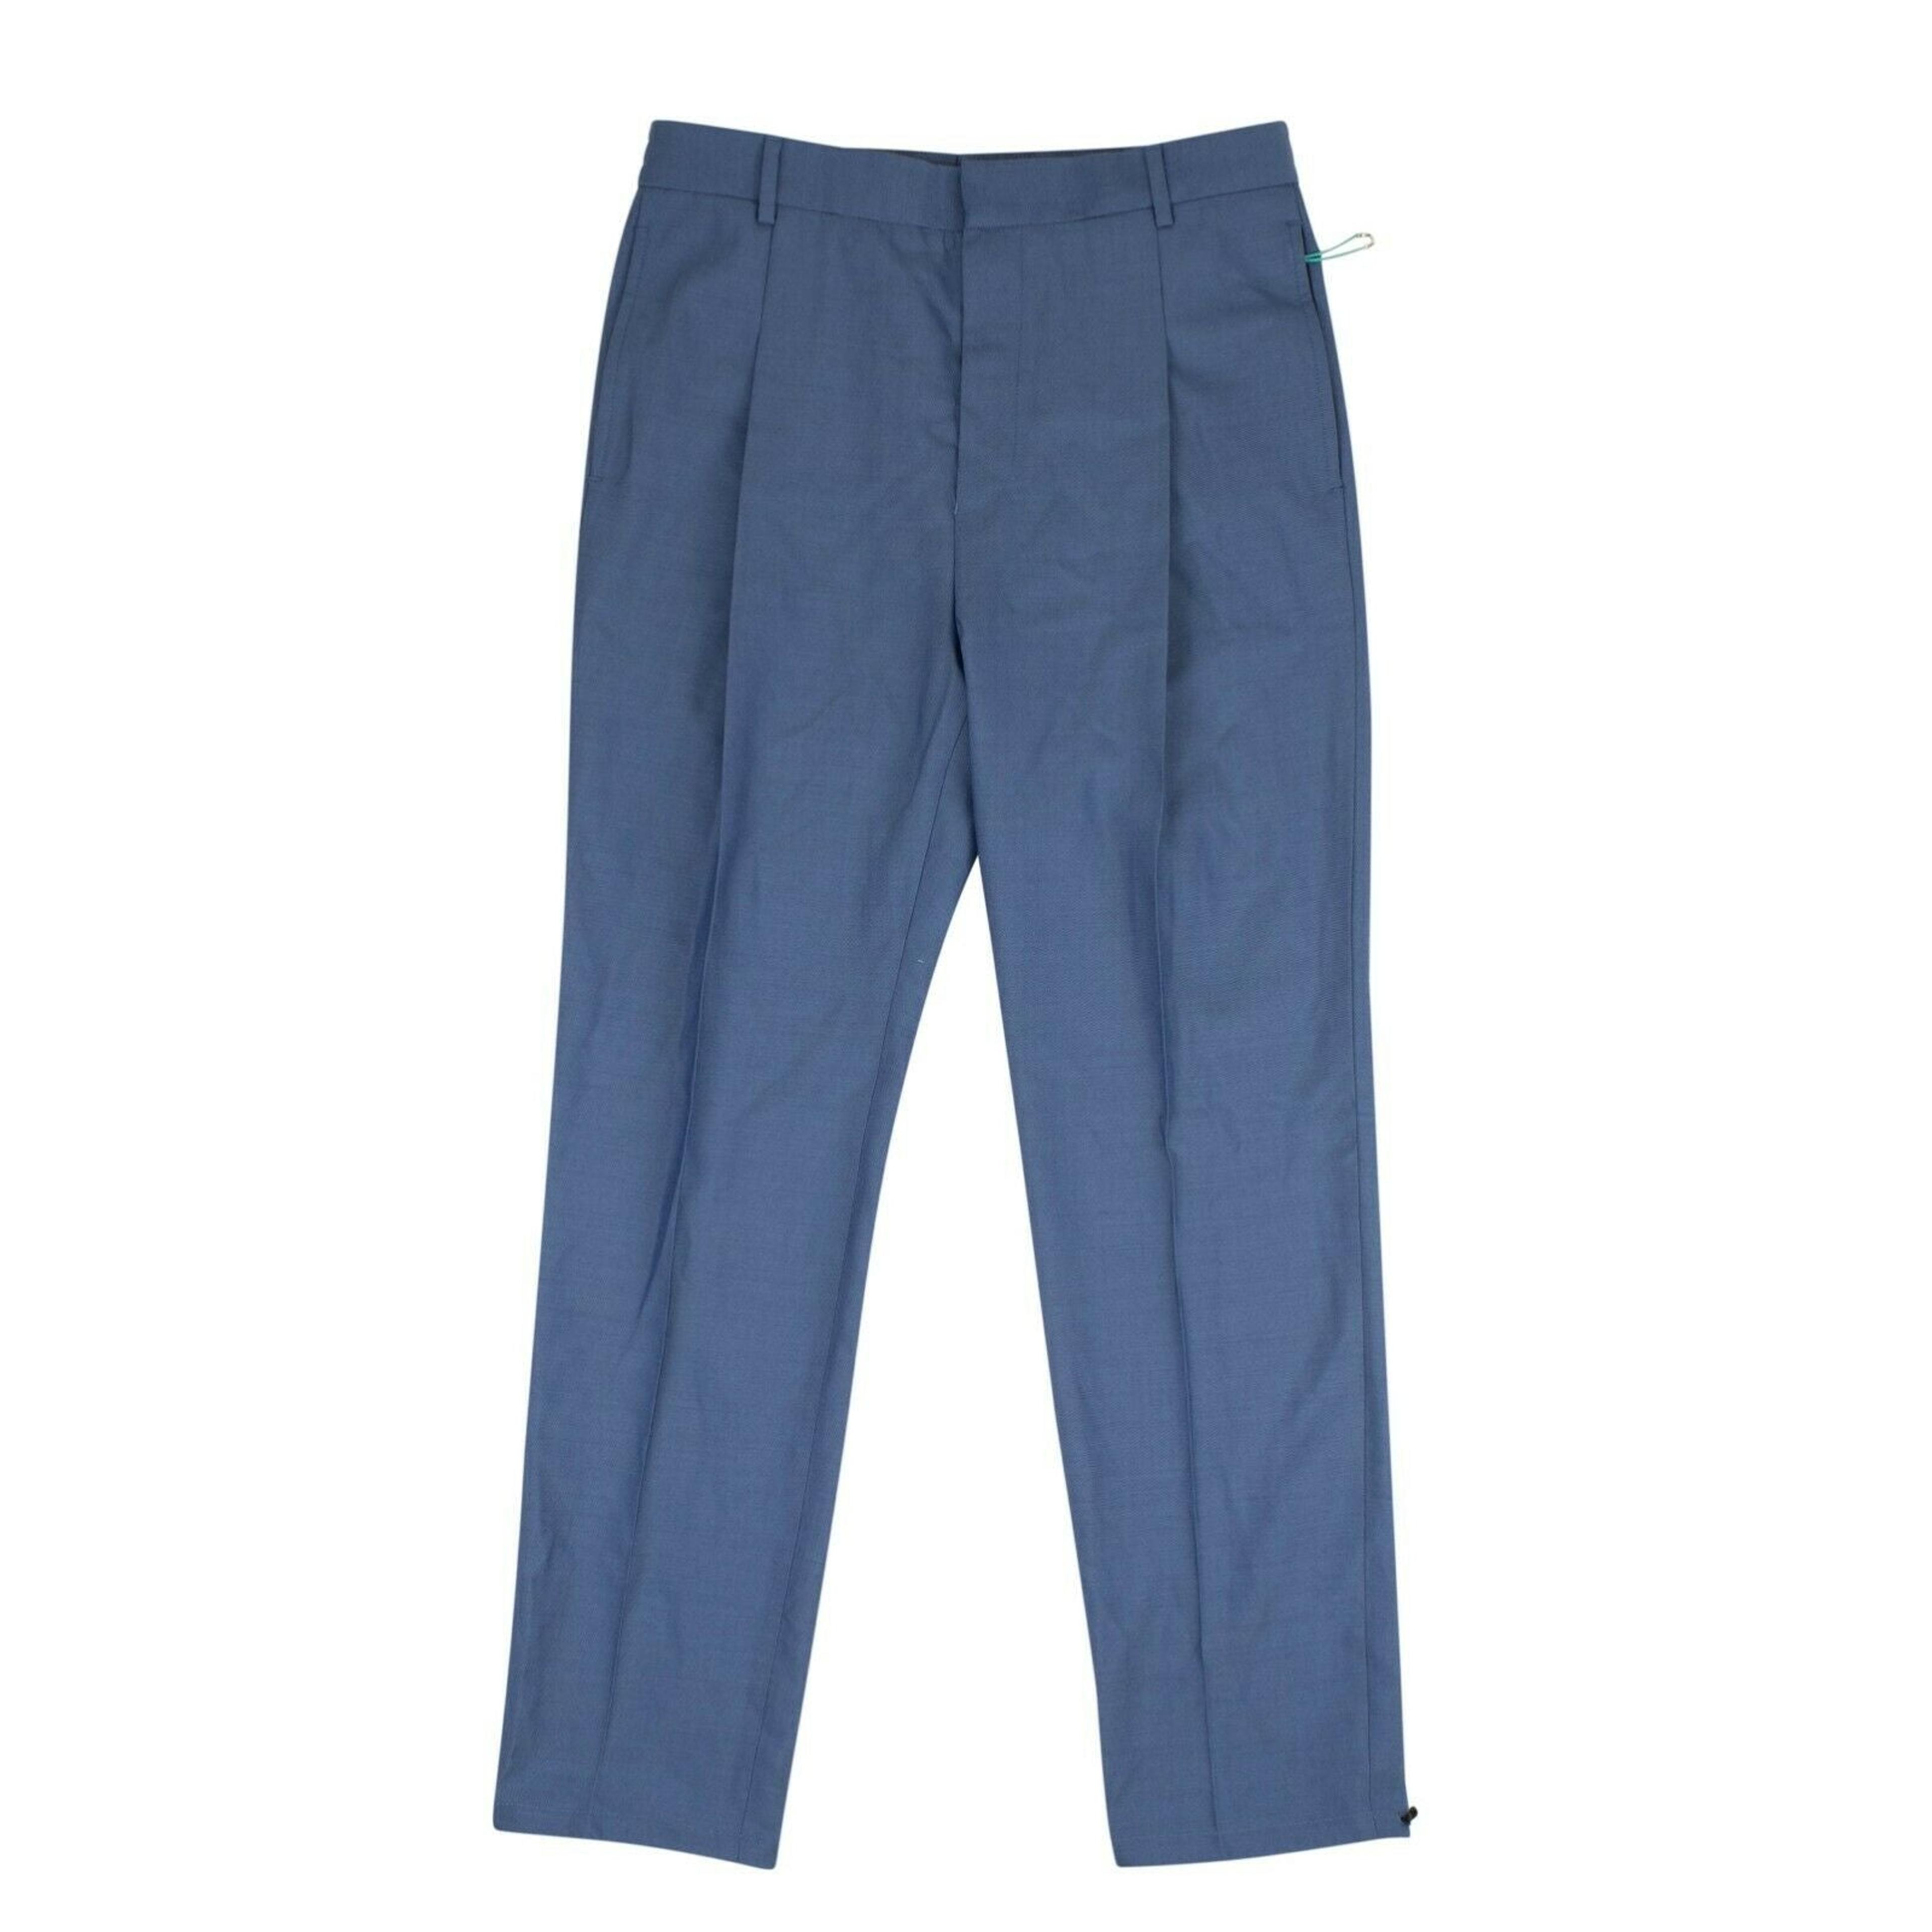 Men's Blue Pleated Pants